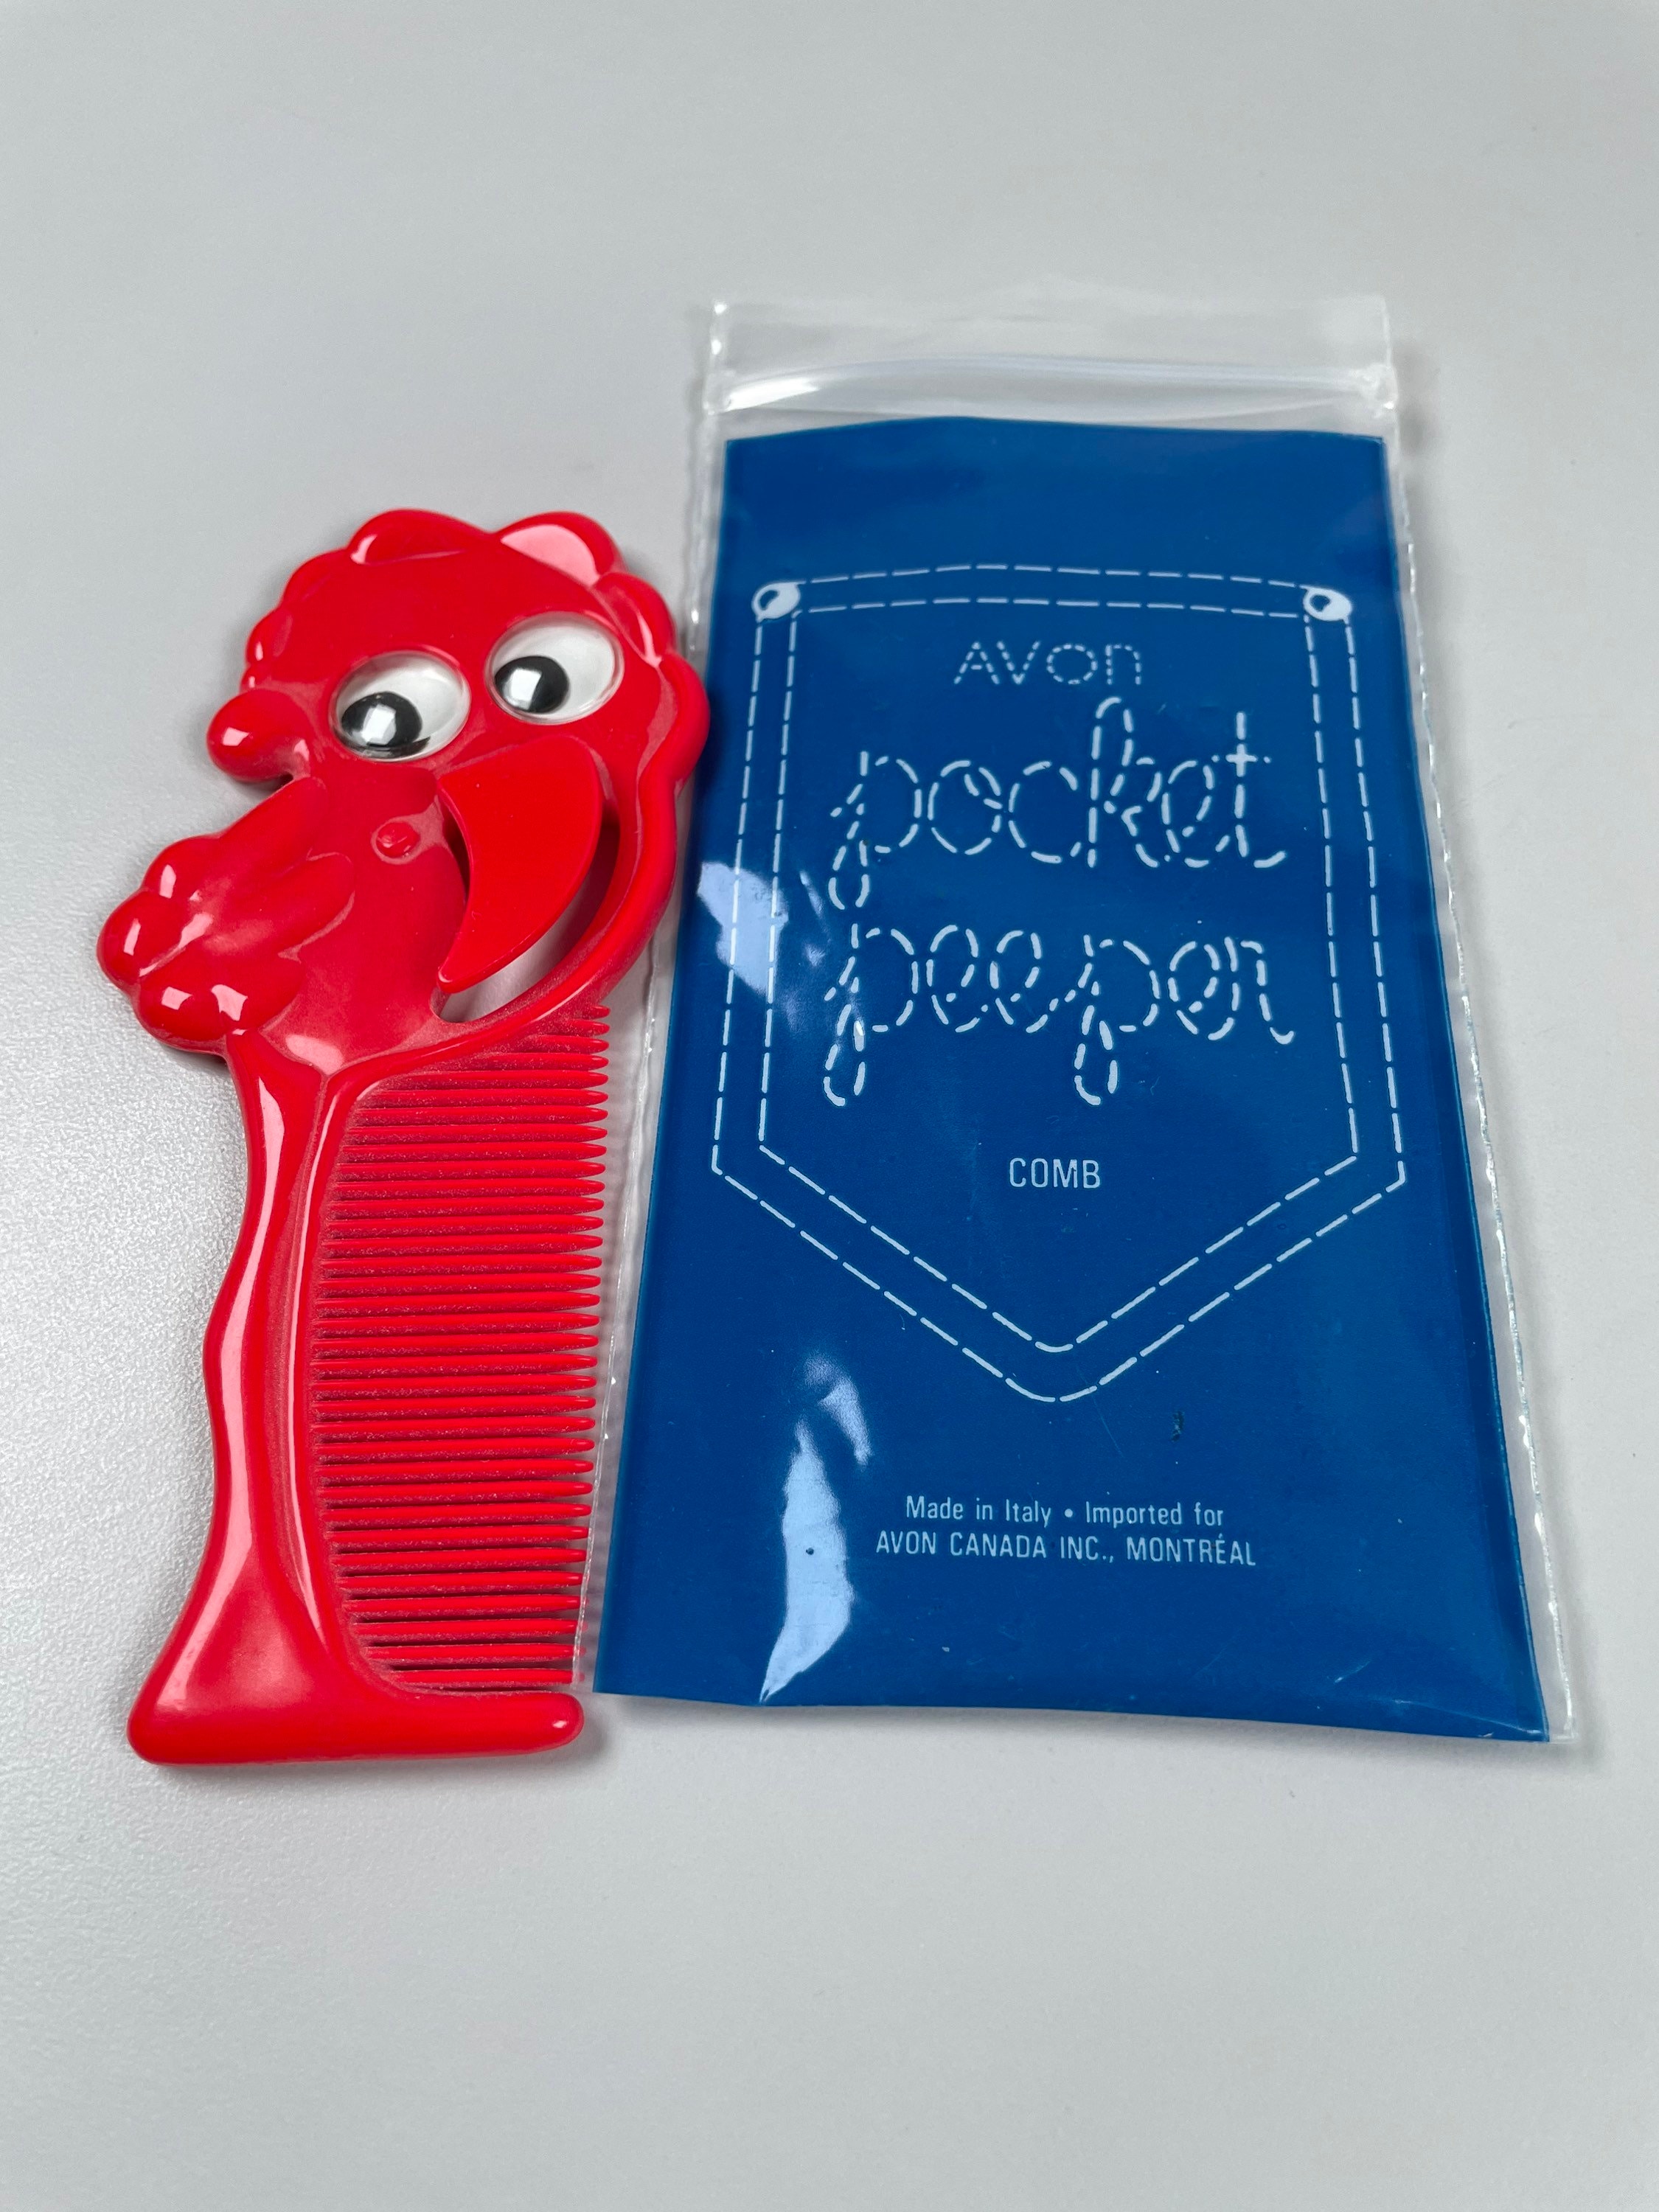 Pocket Peepers